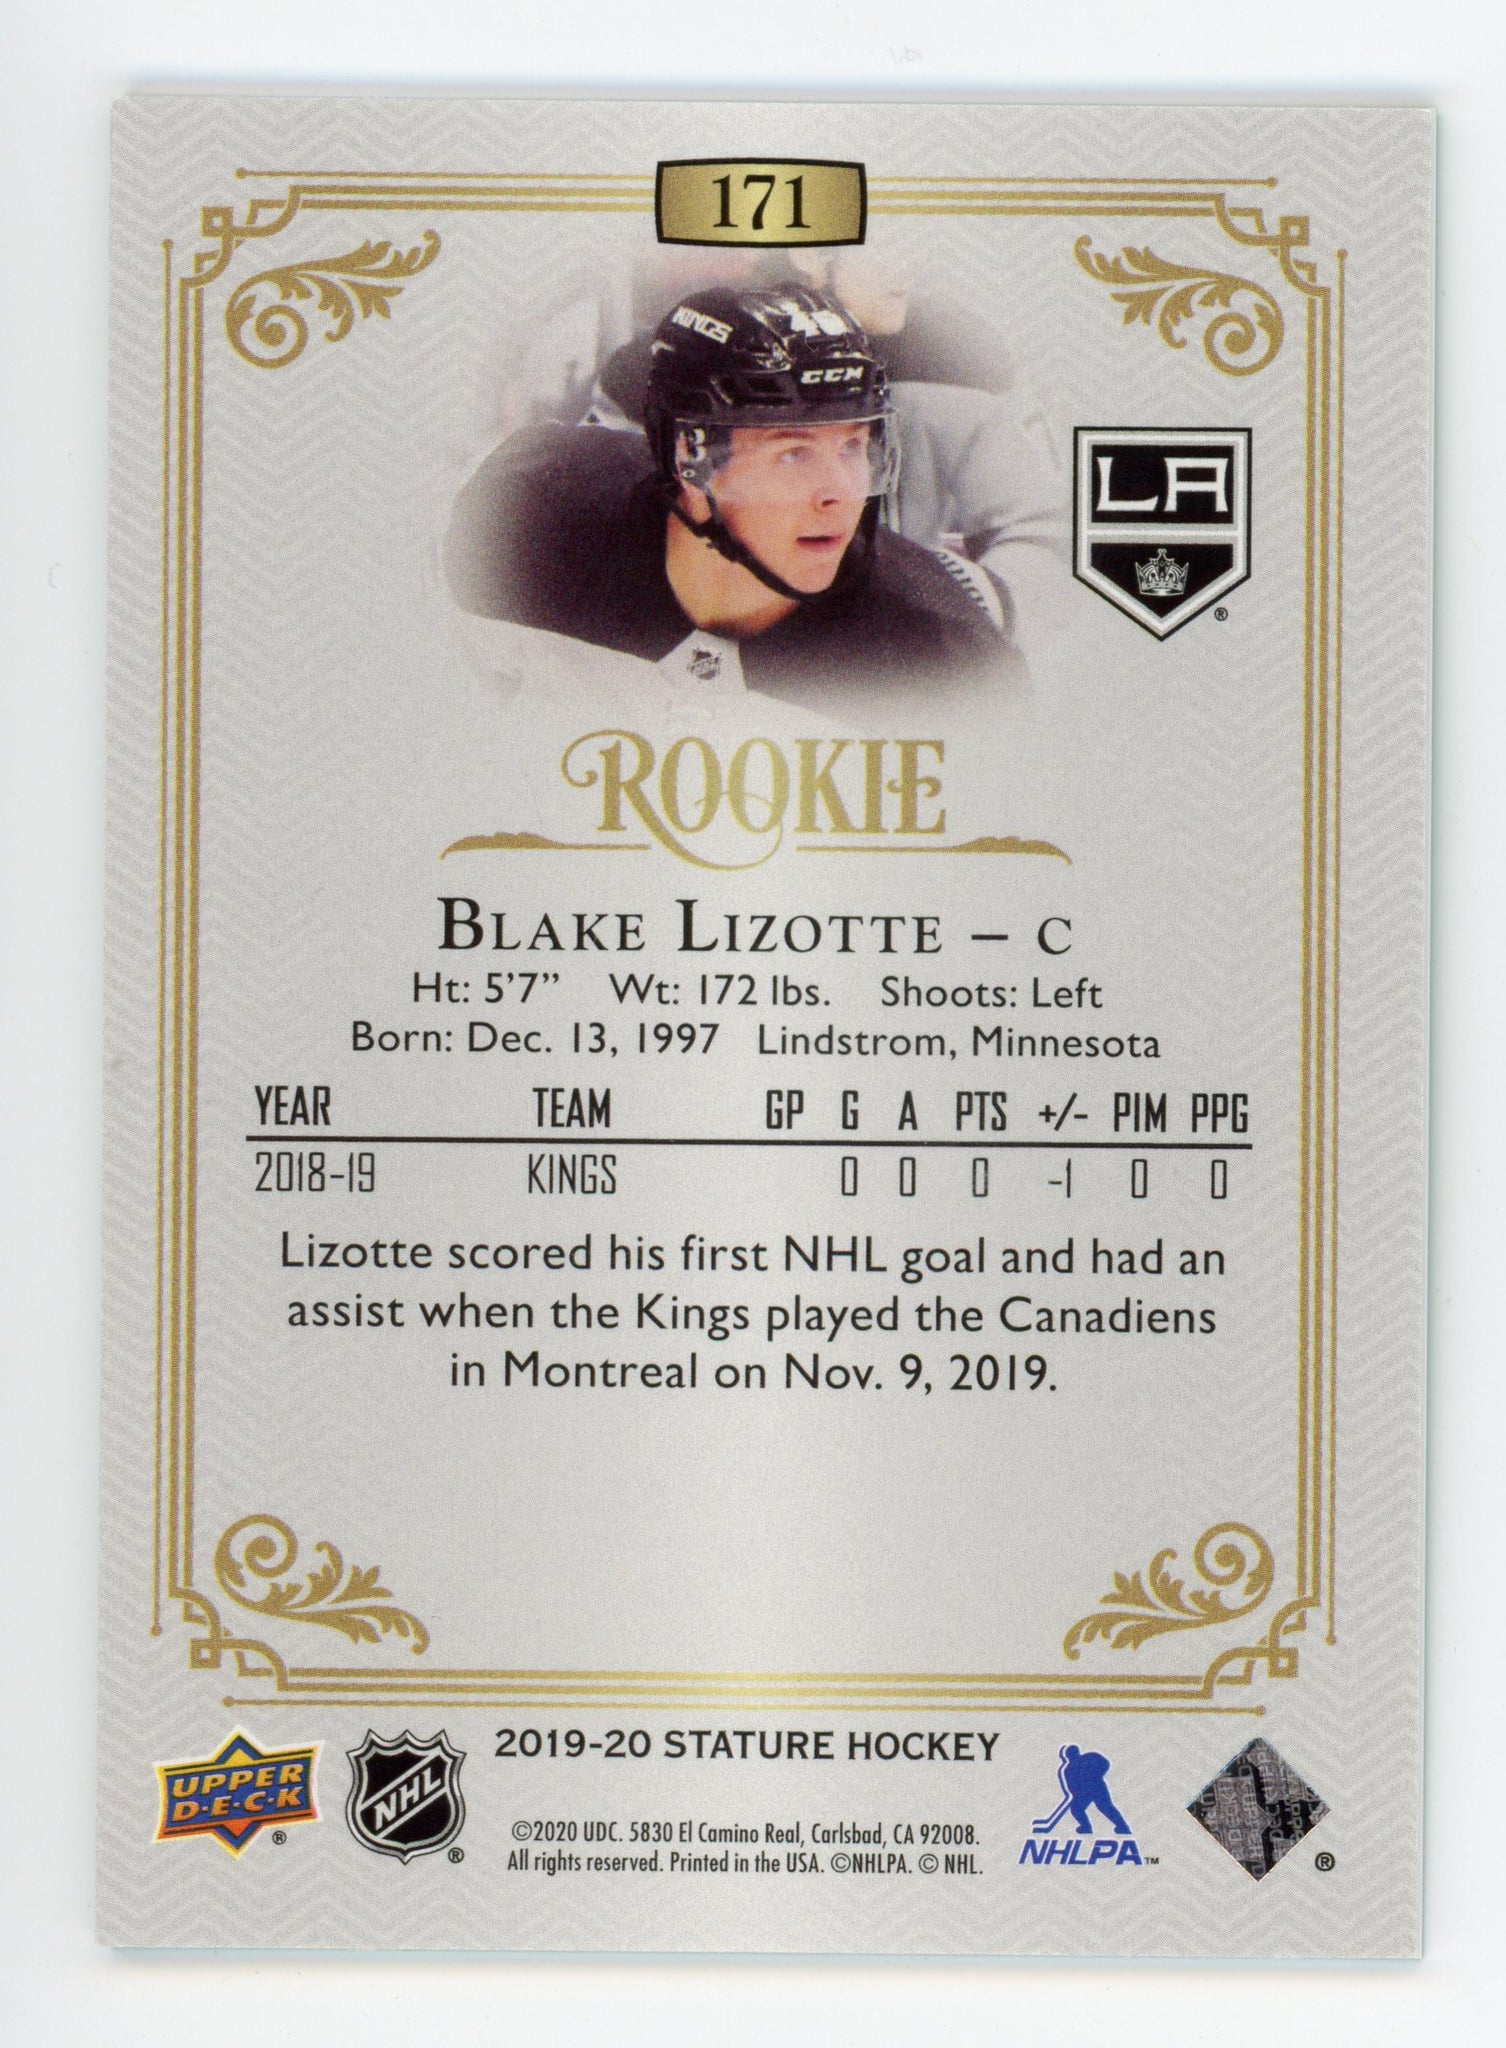 2019-2020 Blake Lizotte Rookie #d /149 Stature Los Angeles Kings # 171